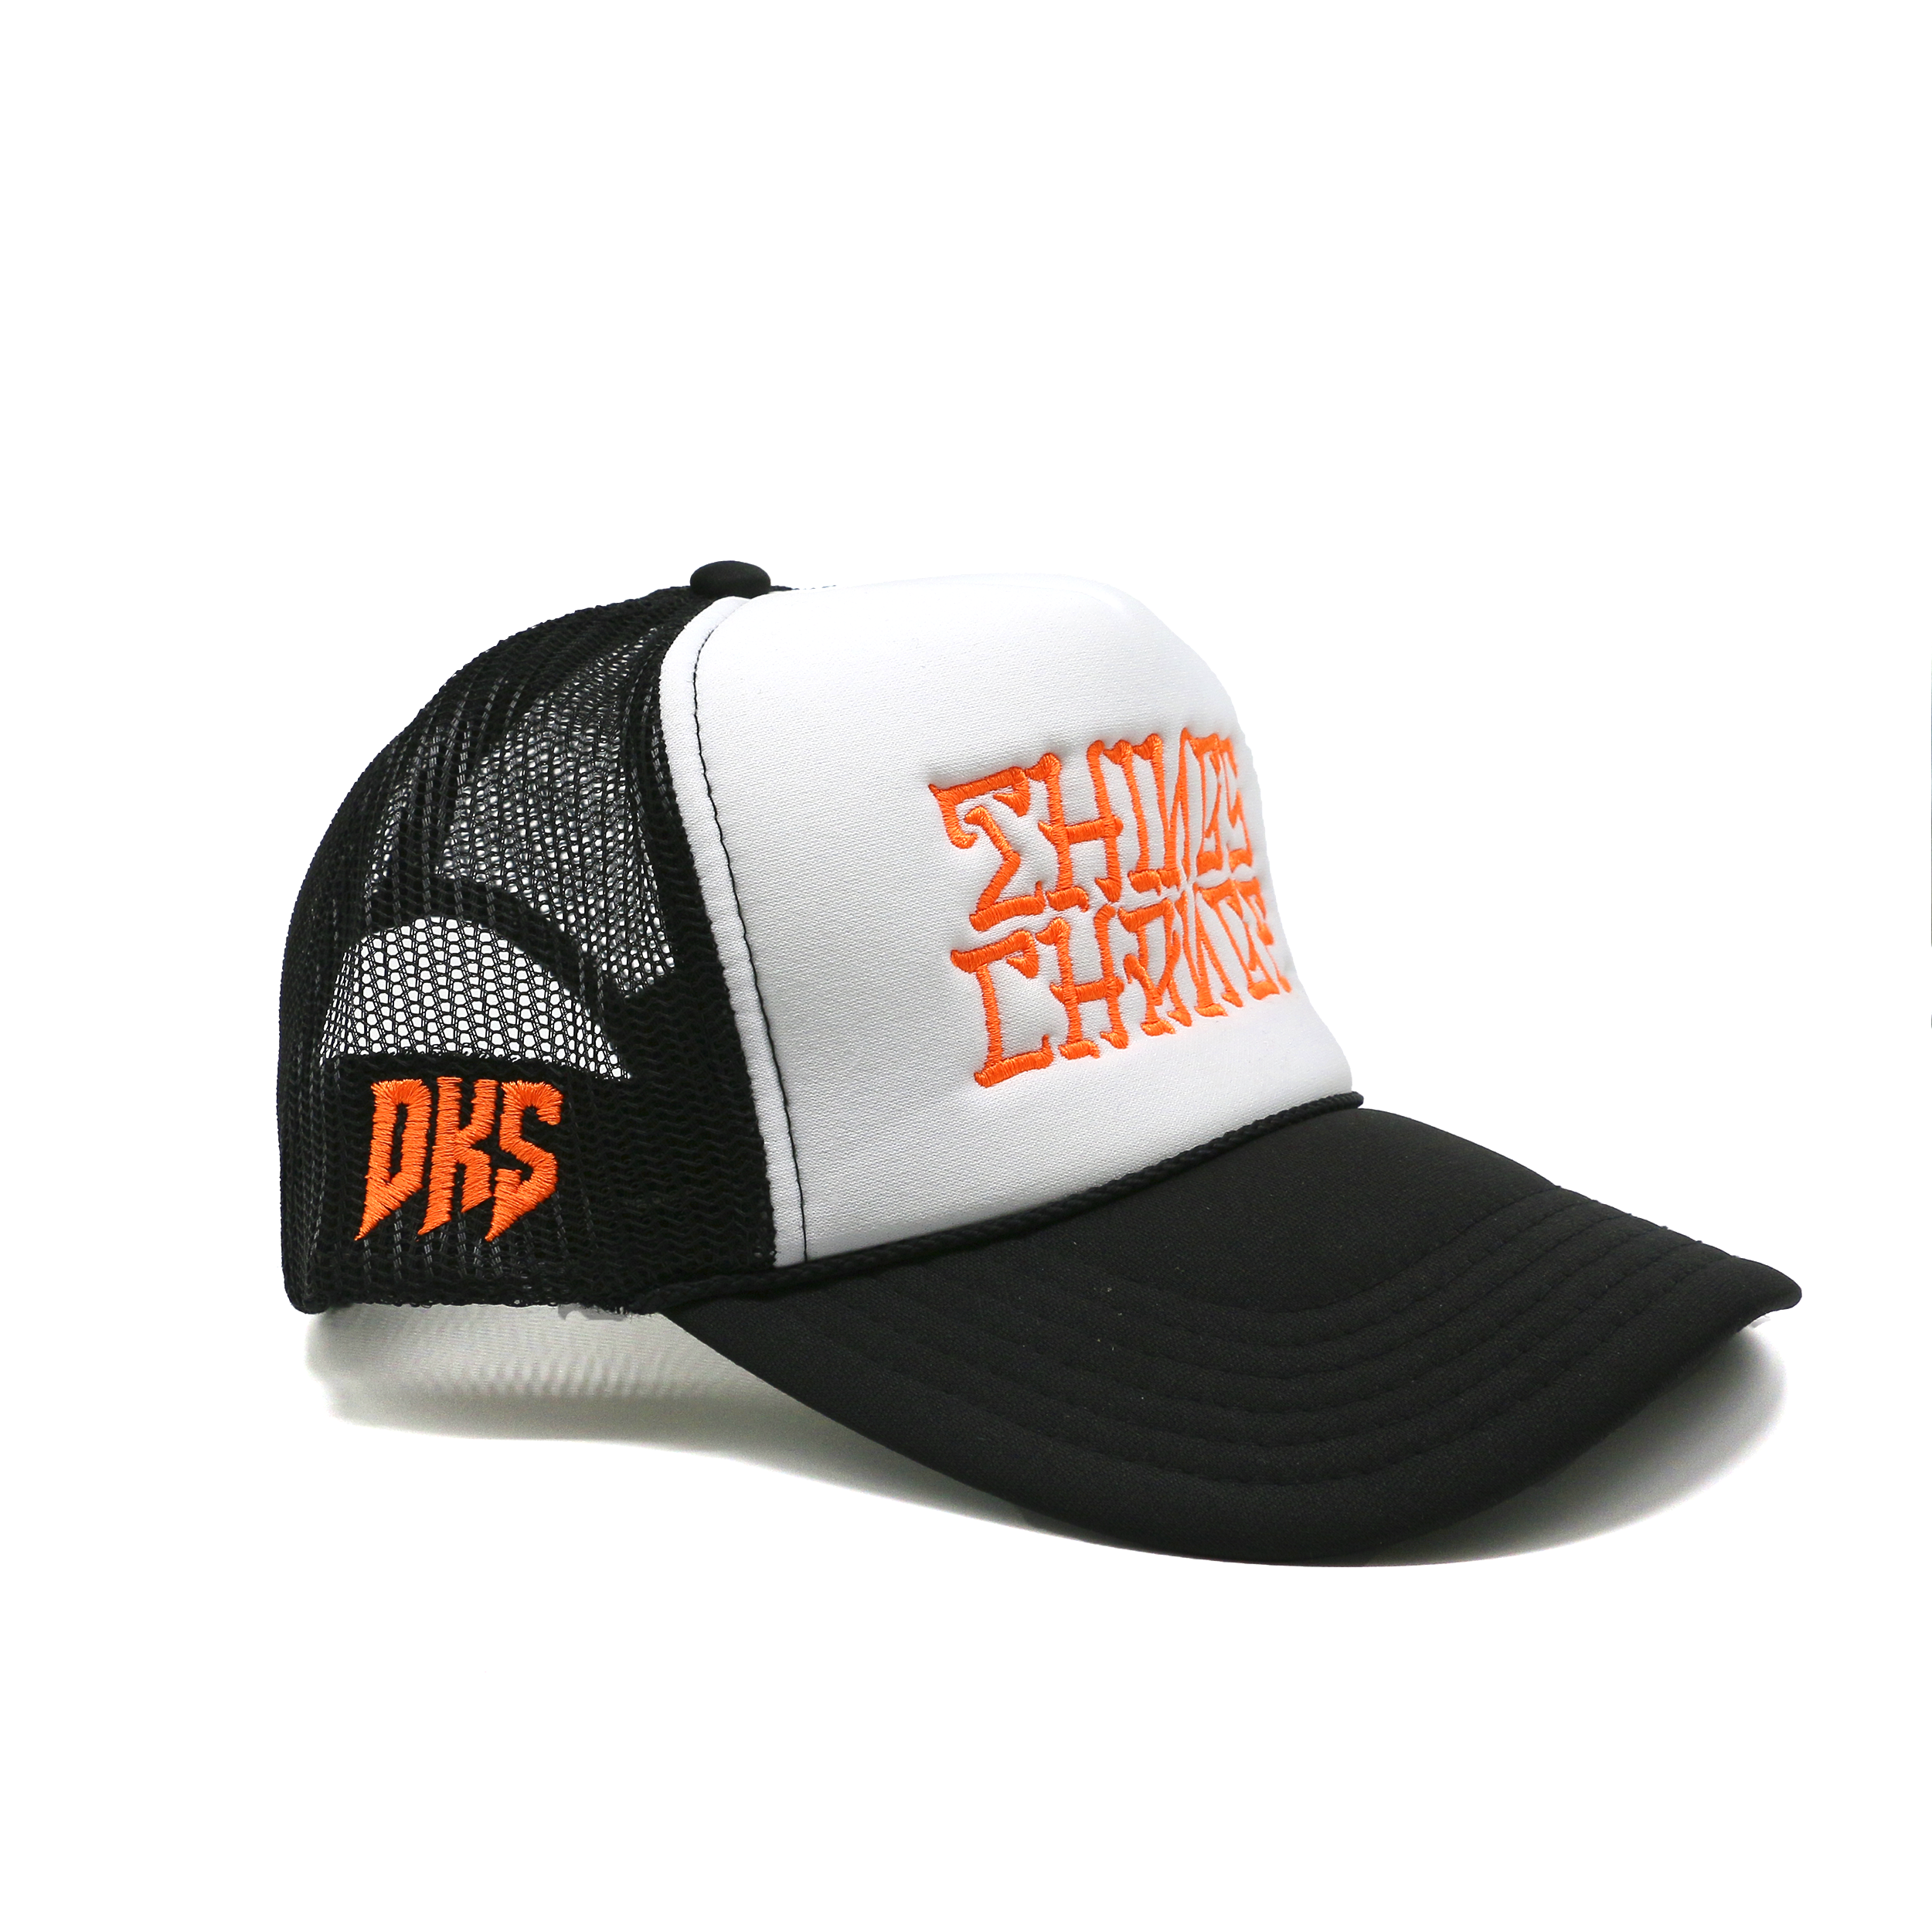 DKS "Things Change" Trucker Hat (Black/White/Orange)